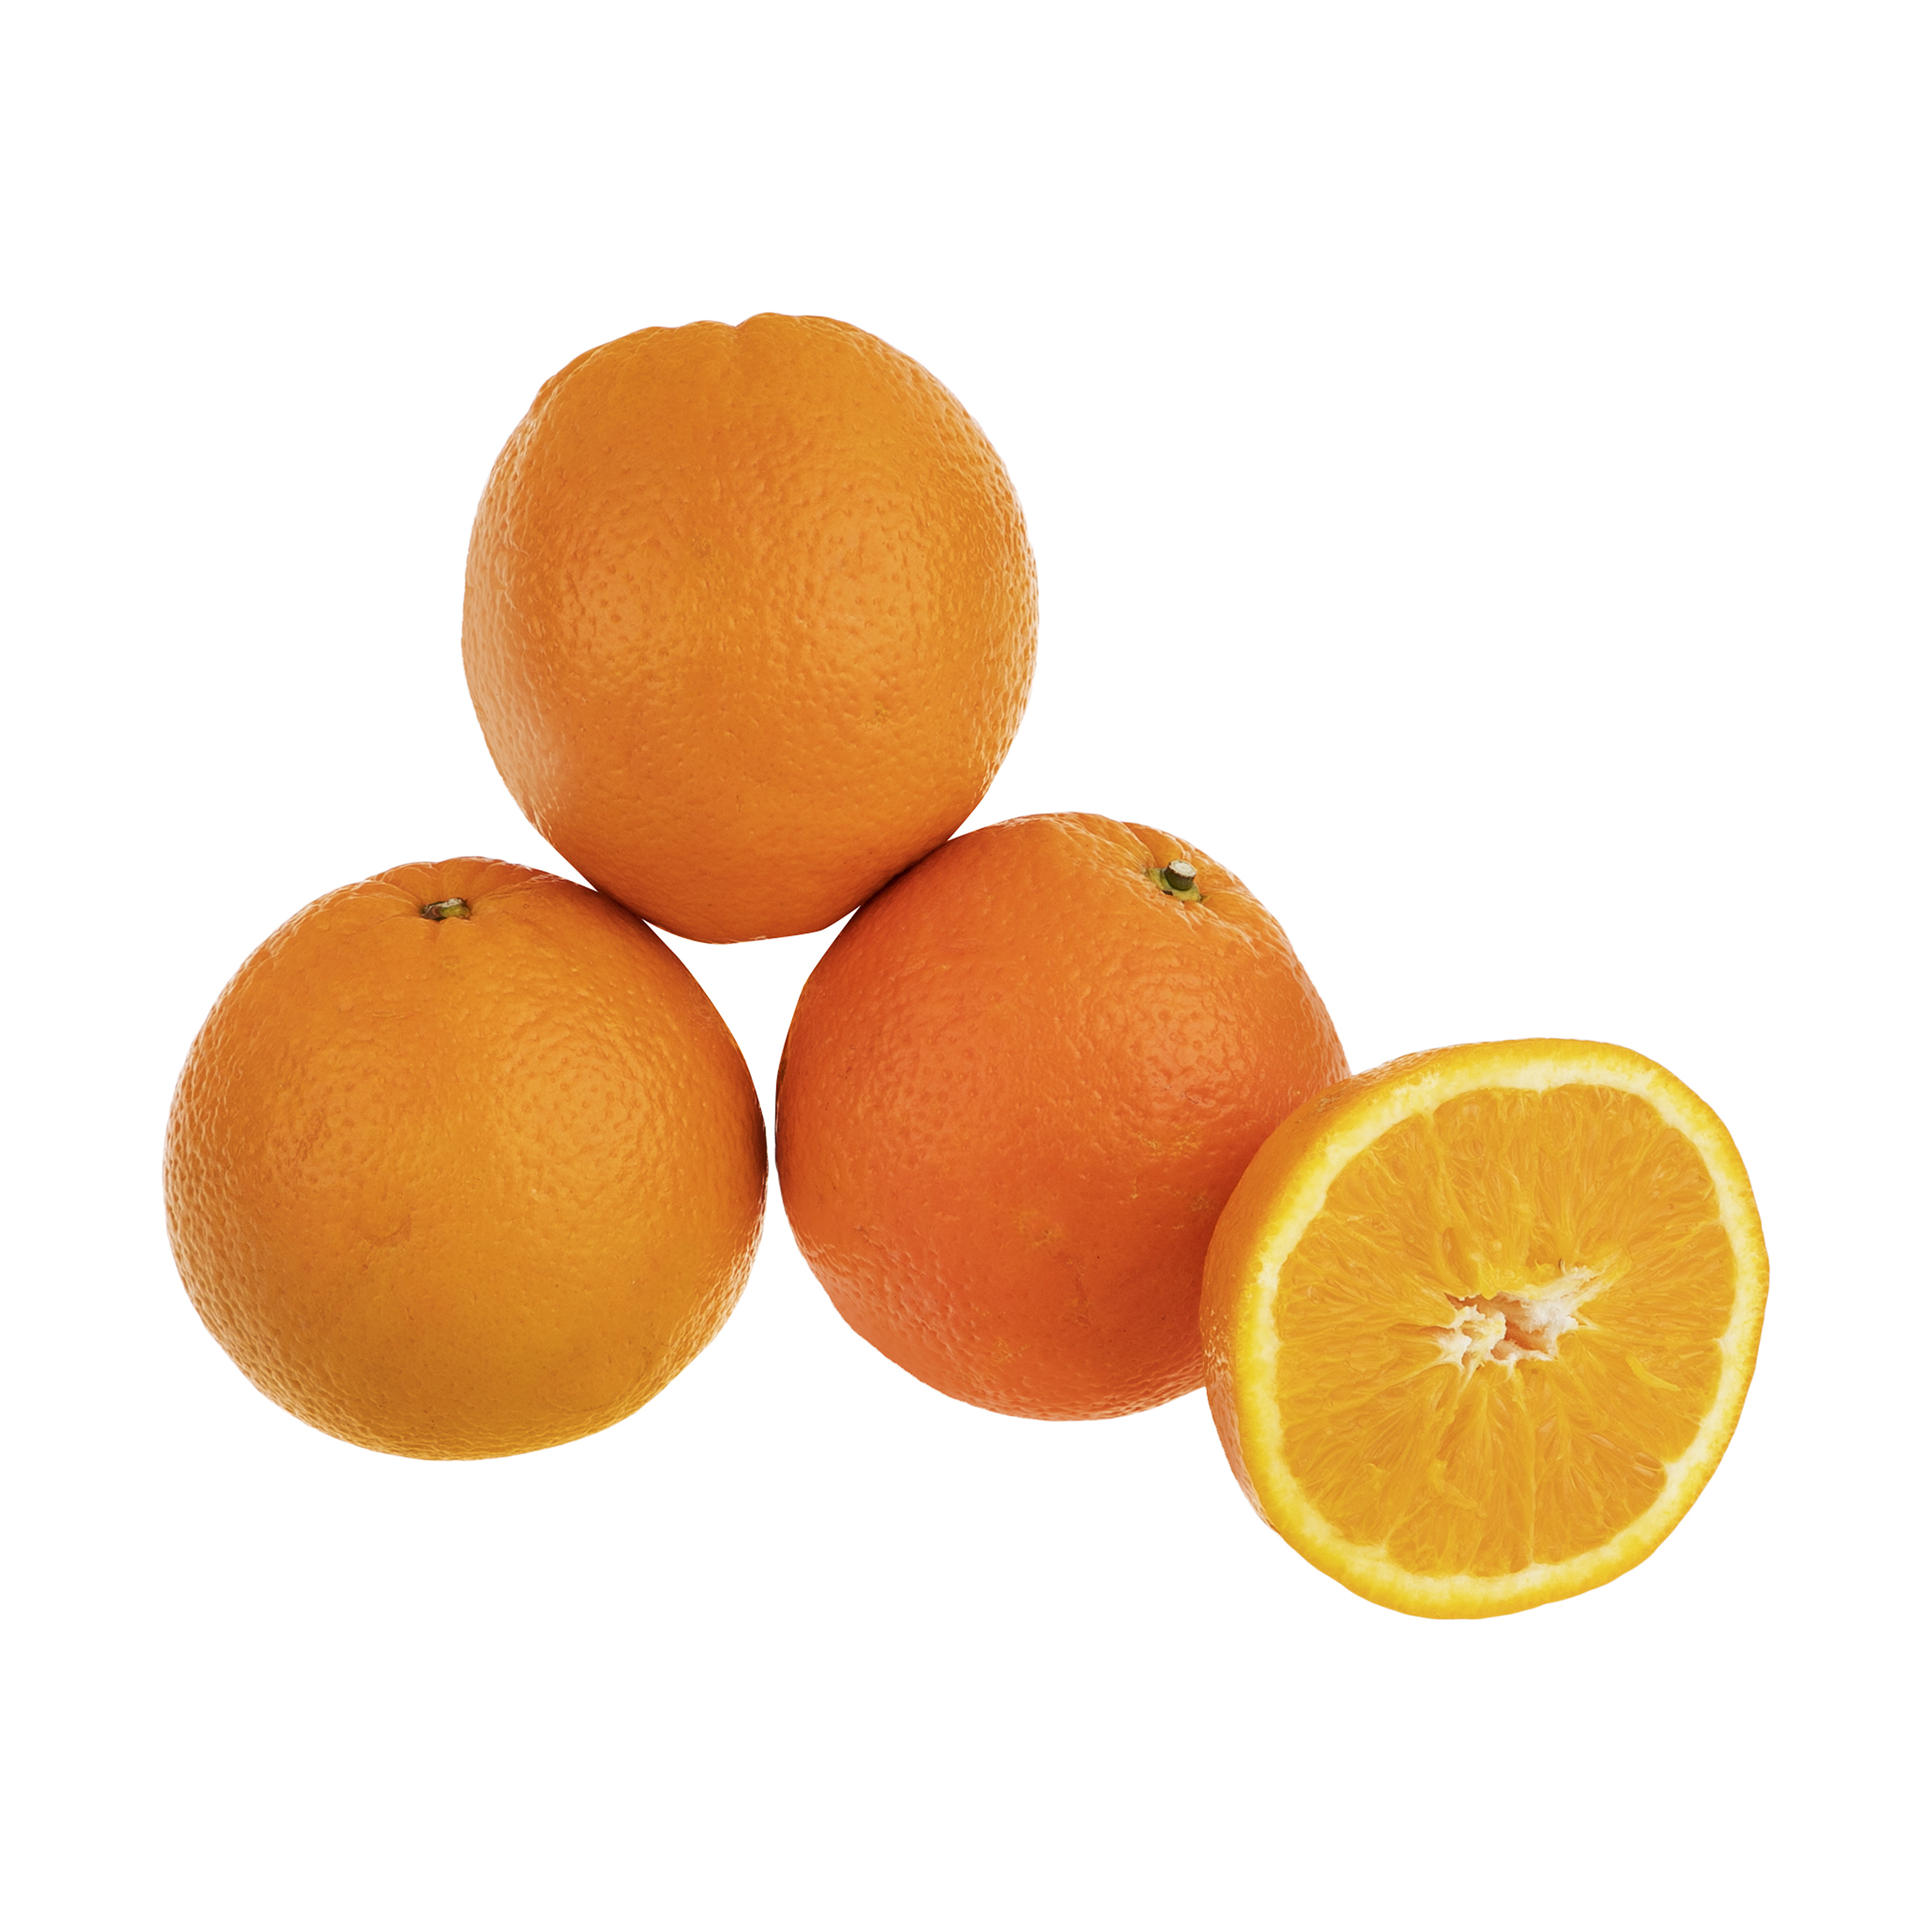 پرتقال تامسون شمال بلوط - 1 کیلوگرم بسته بندی نایلونی 